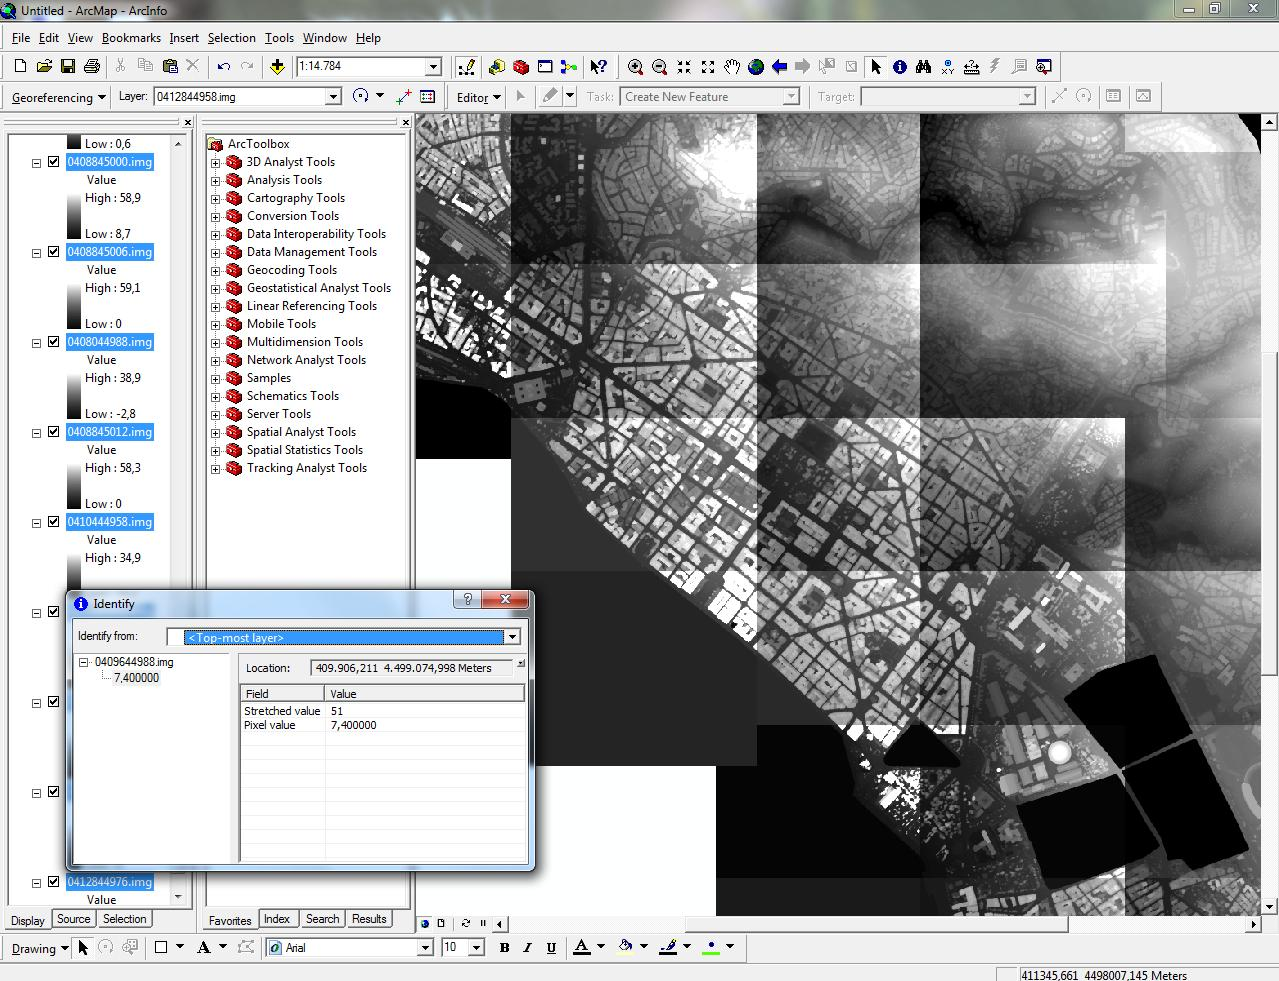 Τρισδιάστατη χαρτογραφική αναπαράσταση αστικών περιοχών με τη χρήση μεταβαλλόμενης προοπτικής: εφαρμογή στη Θεσσαλονίκη Εικόνα 4.6.